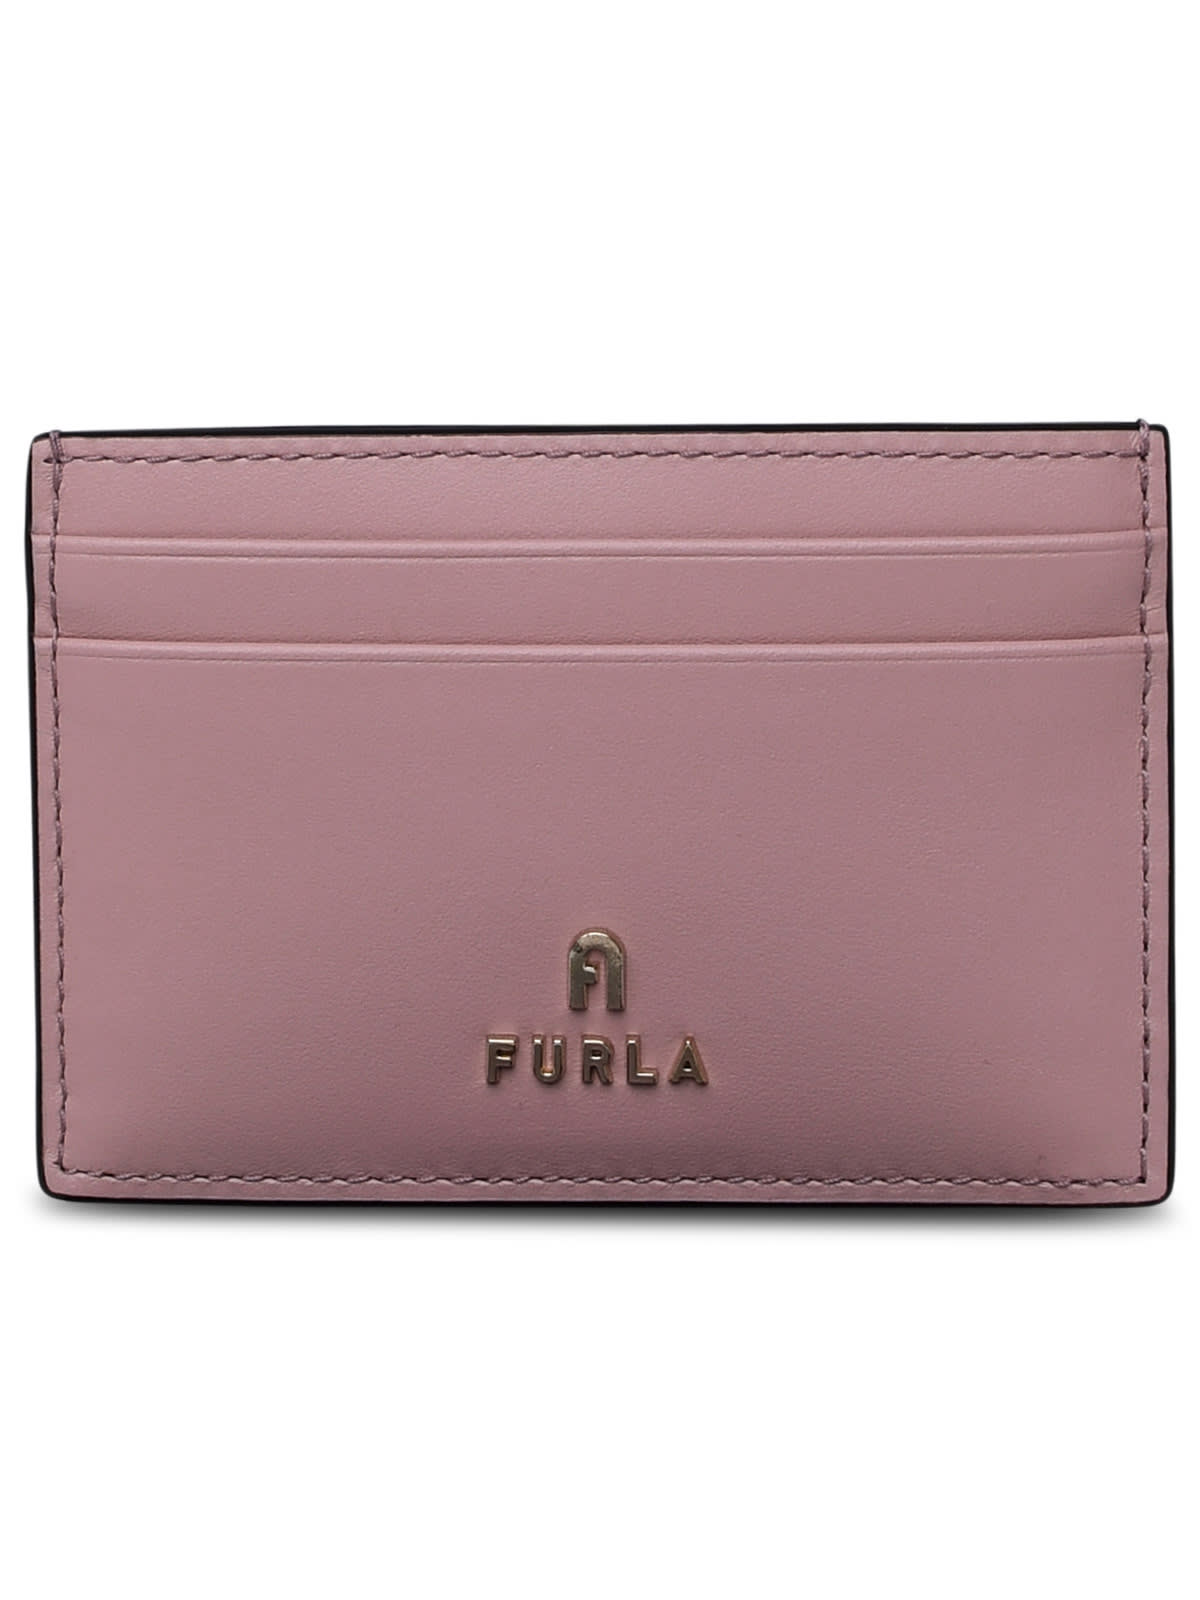 Furla Pink Leather Cardholder